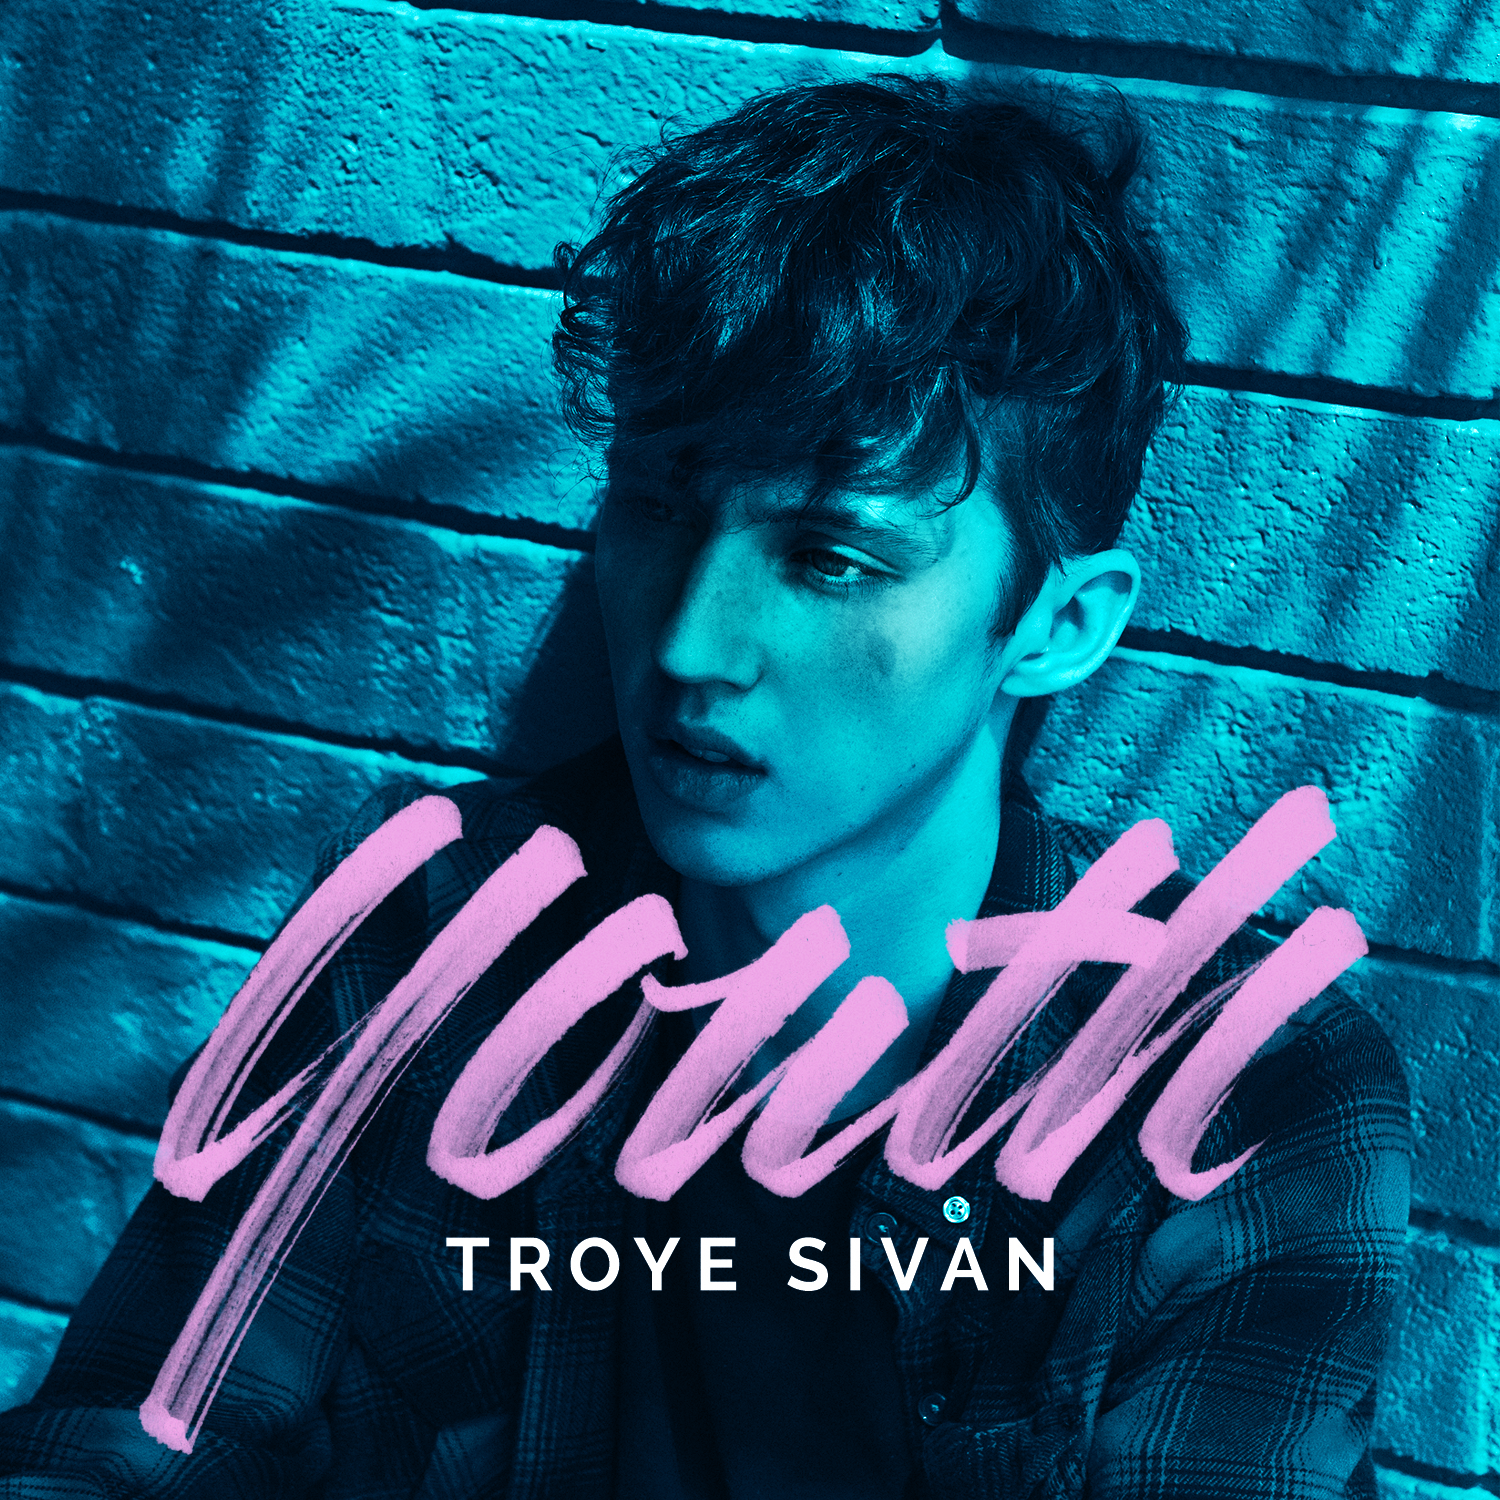 Troye Sivan Youth Songs Kurt Trowbridge Original lyrics of youth song by troye sivan. kurt trowbridge